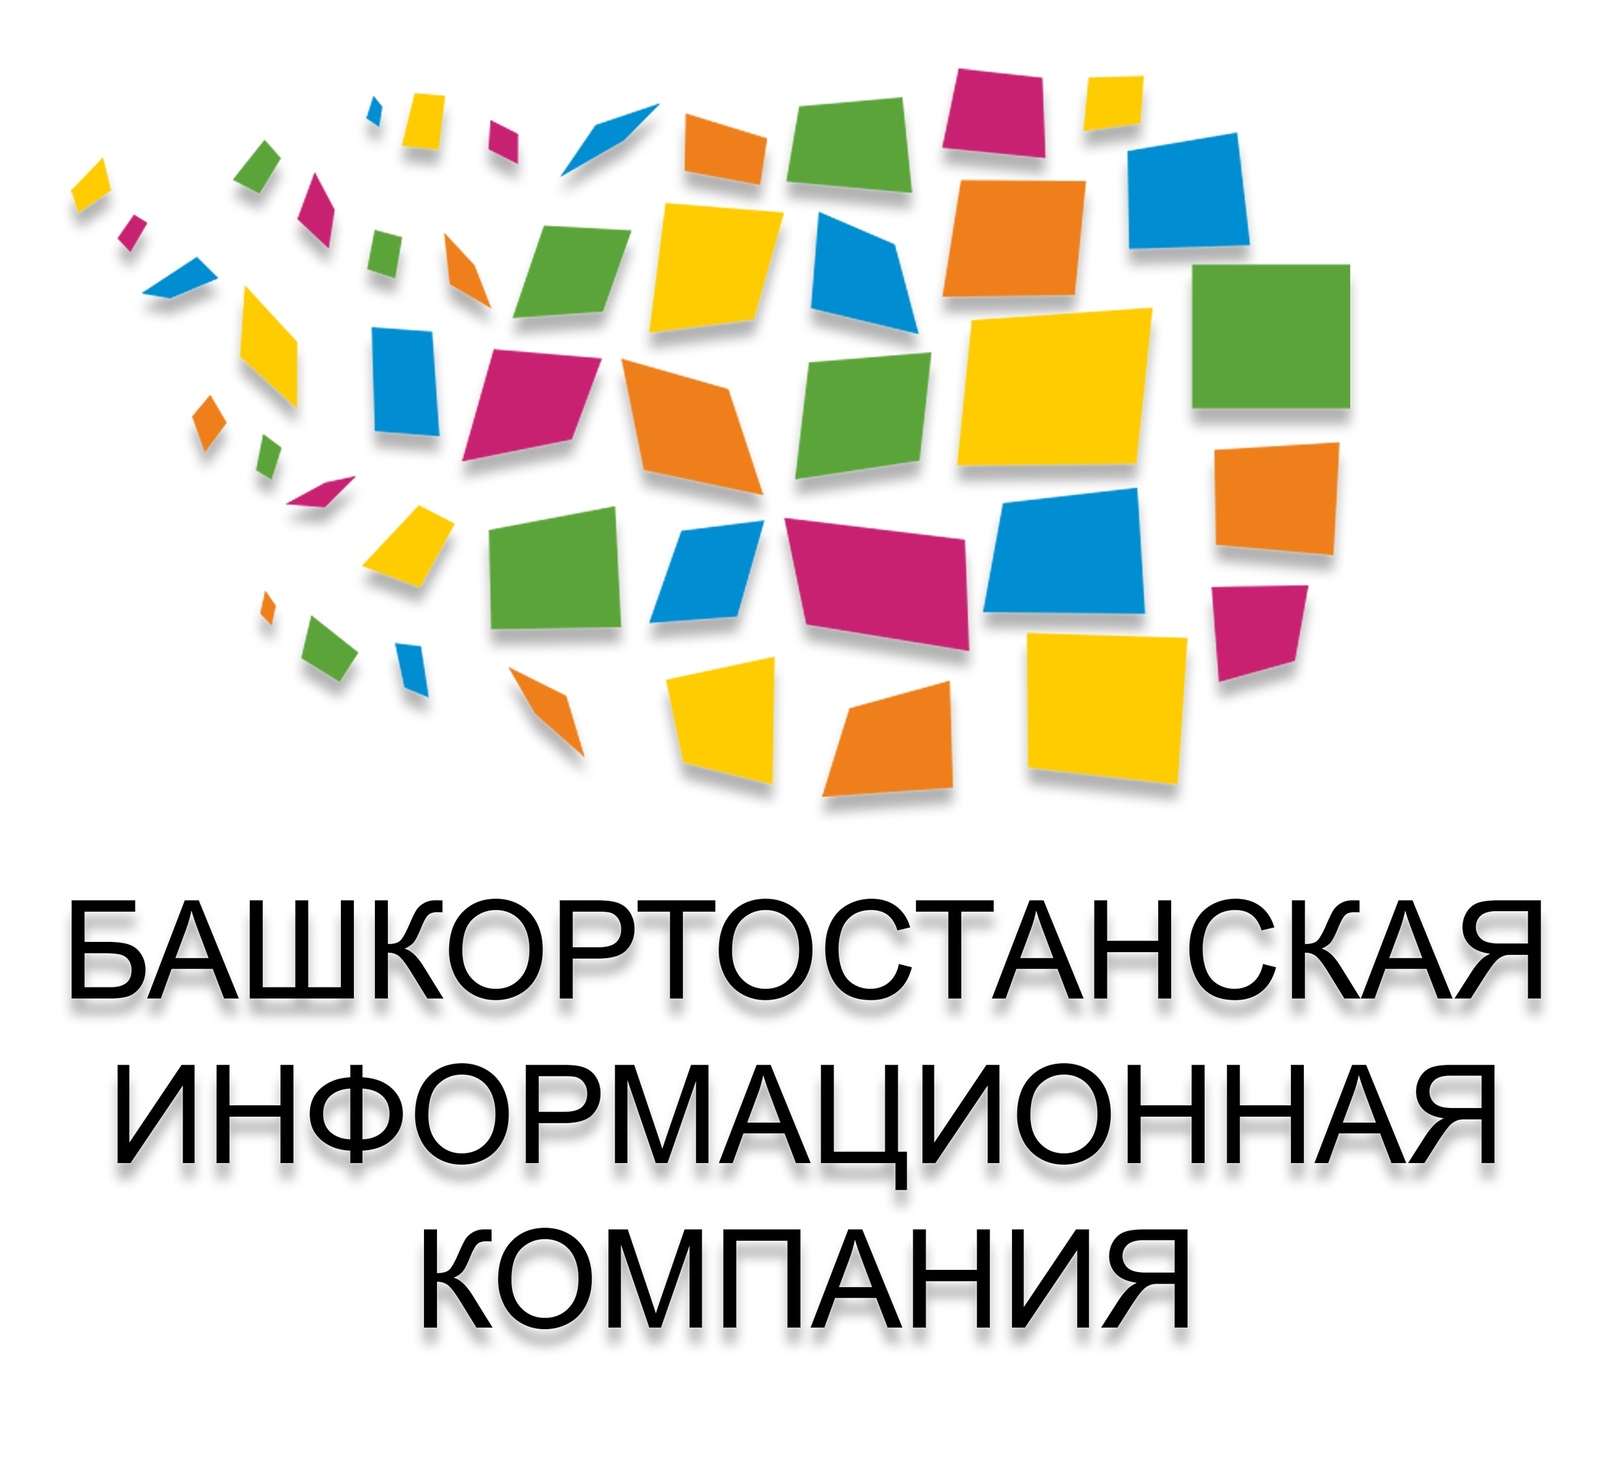 Сайты изданий ИД «Республика Башкортостан», в том числе газеты «Кумертауское время», самые читаемые